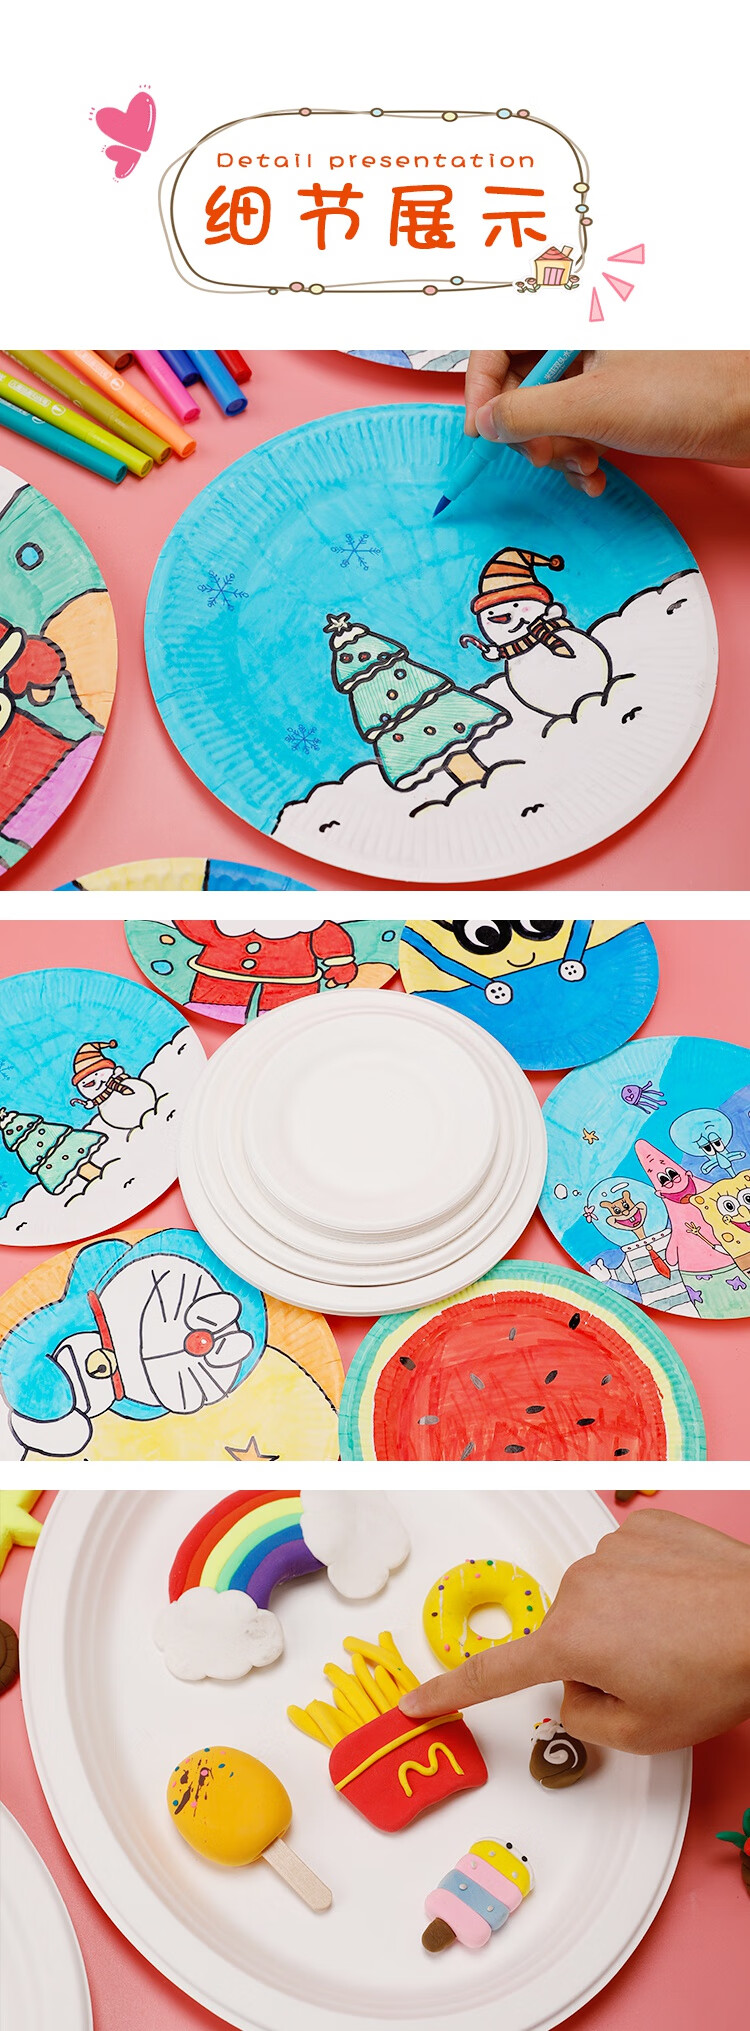 纸盘一次性白色纸盘幼儿园画画蛋糕盘子手工diy制作儿童手绘美术材料